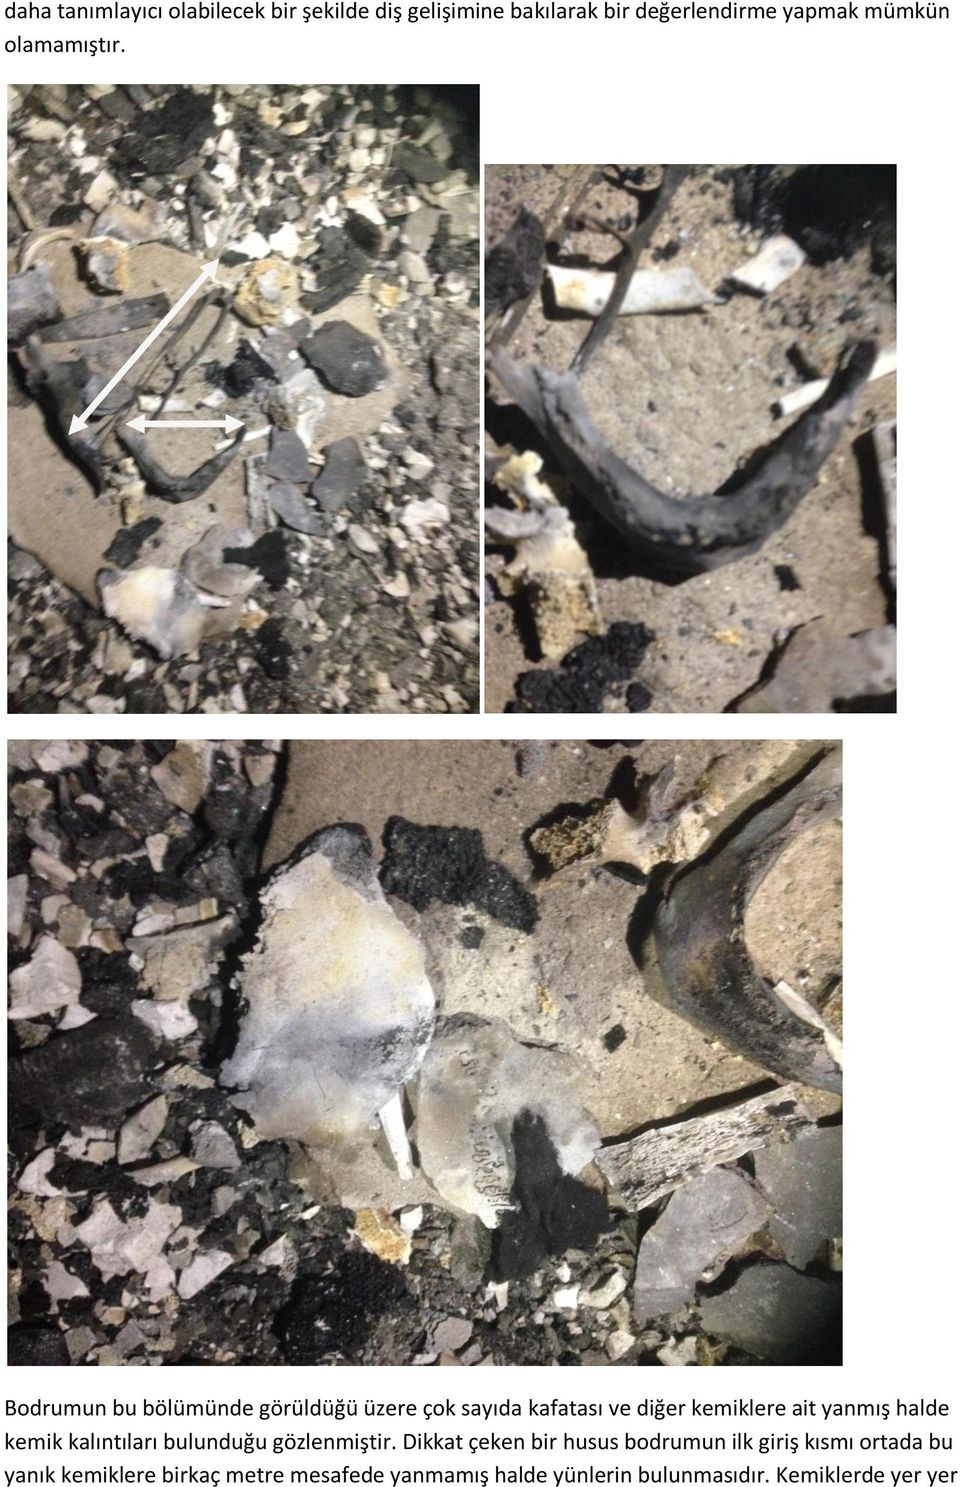 Bodrumun bu bölümünde görüldüğü üzere çok sayıda kafatası ve diğer kemiklere ait yanmış halde kemik